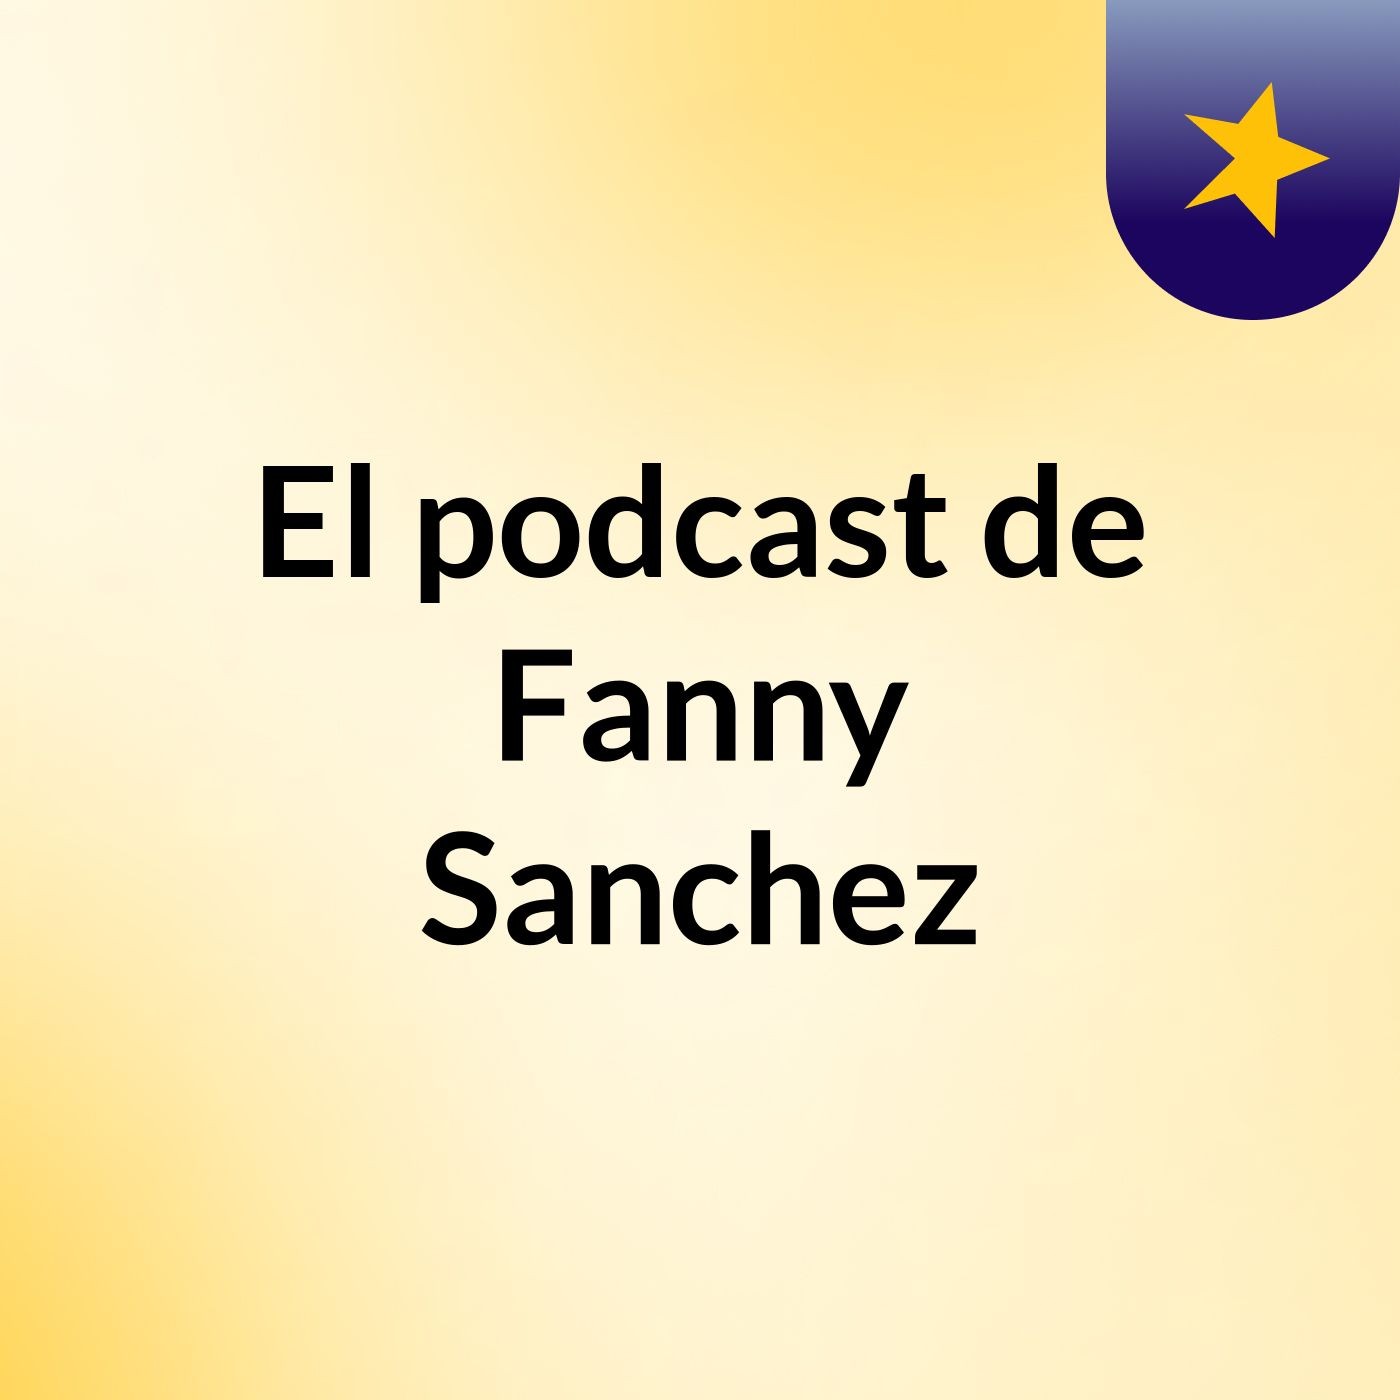 El podcast de Fanny Sanchez